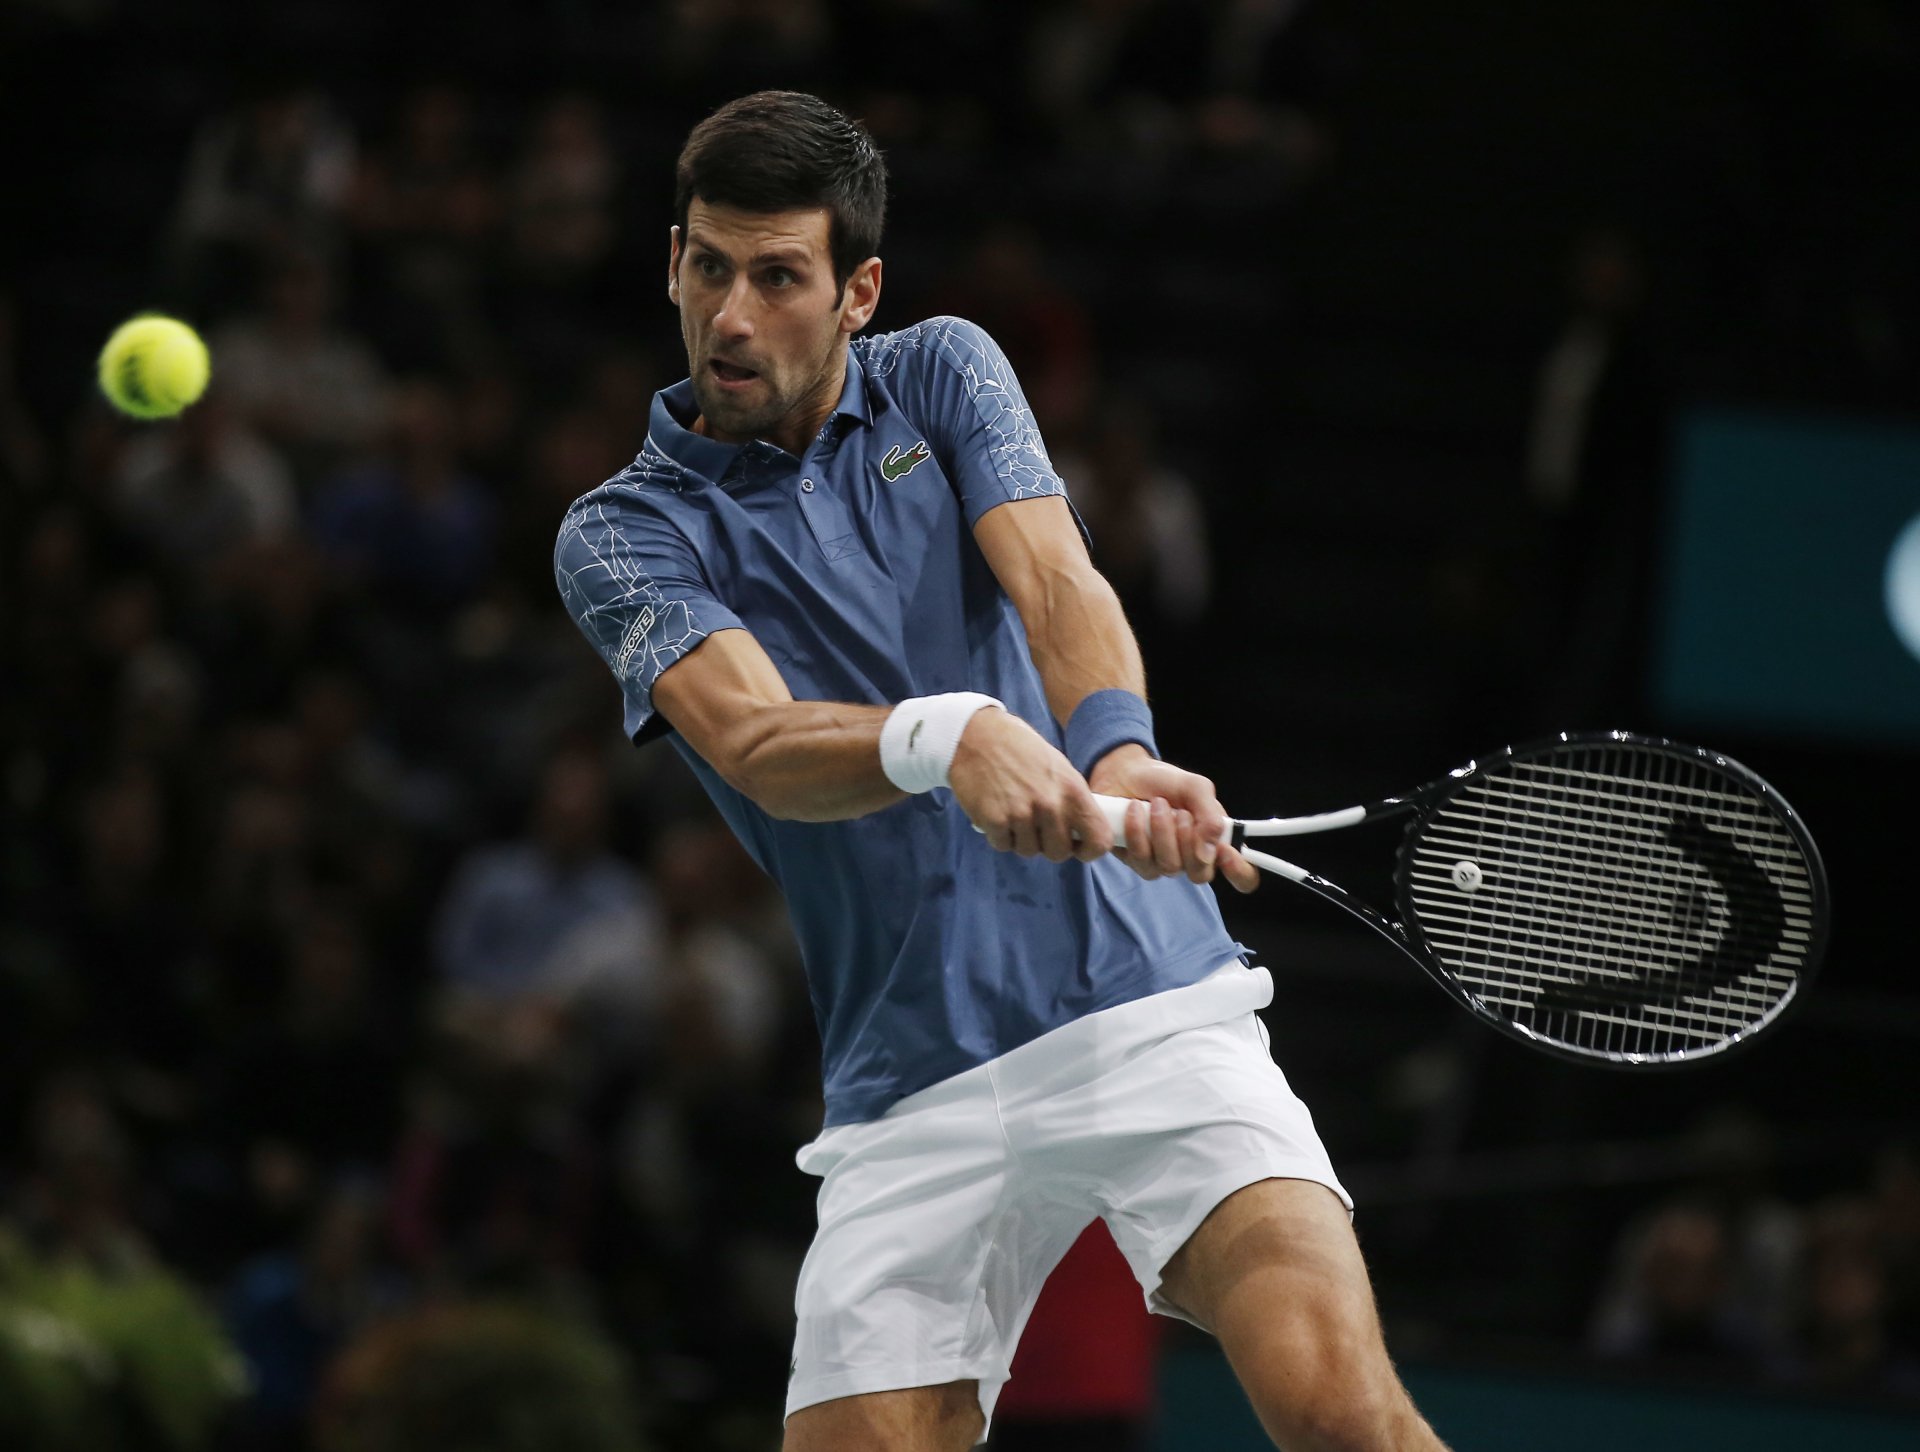 Abierto de Australia: Novak Djokovic fue incluido en el sorteo a pesar de su situación